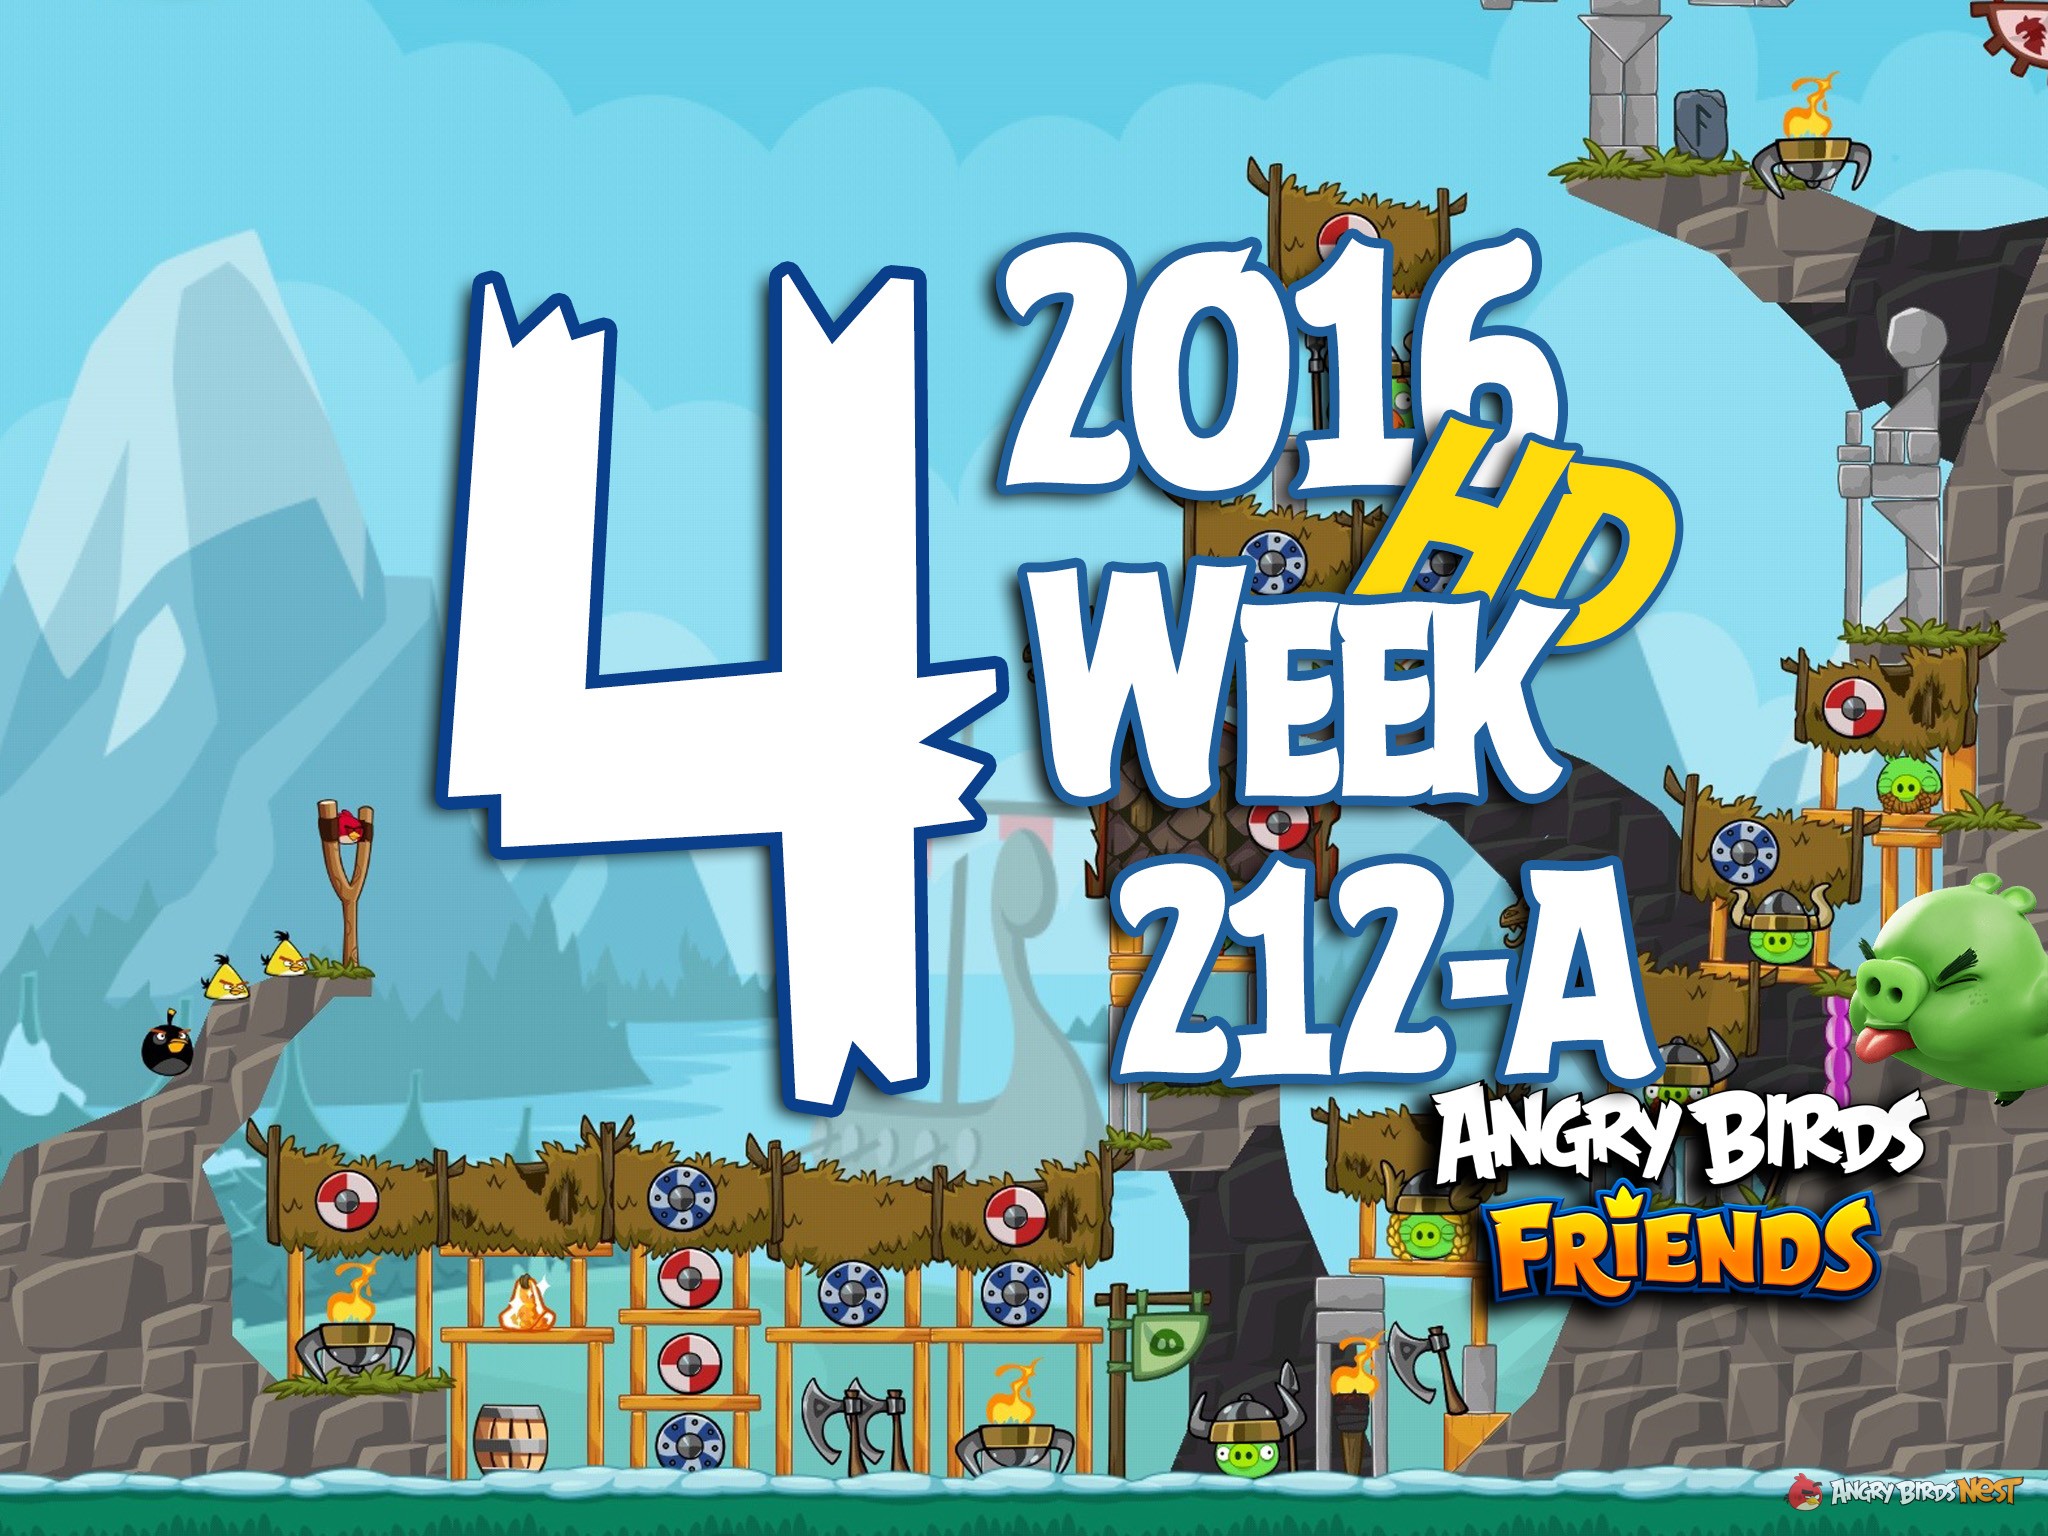 Angry Birds Friends Tournament Level 4 Week 212 Walkthrough | 2016